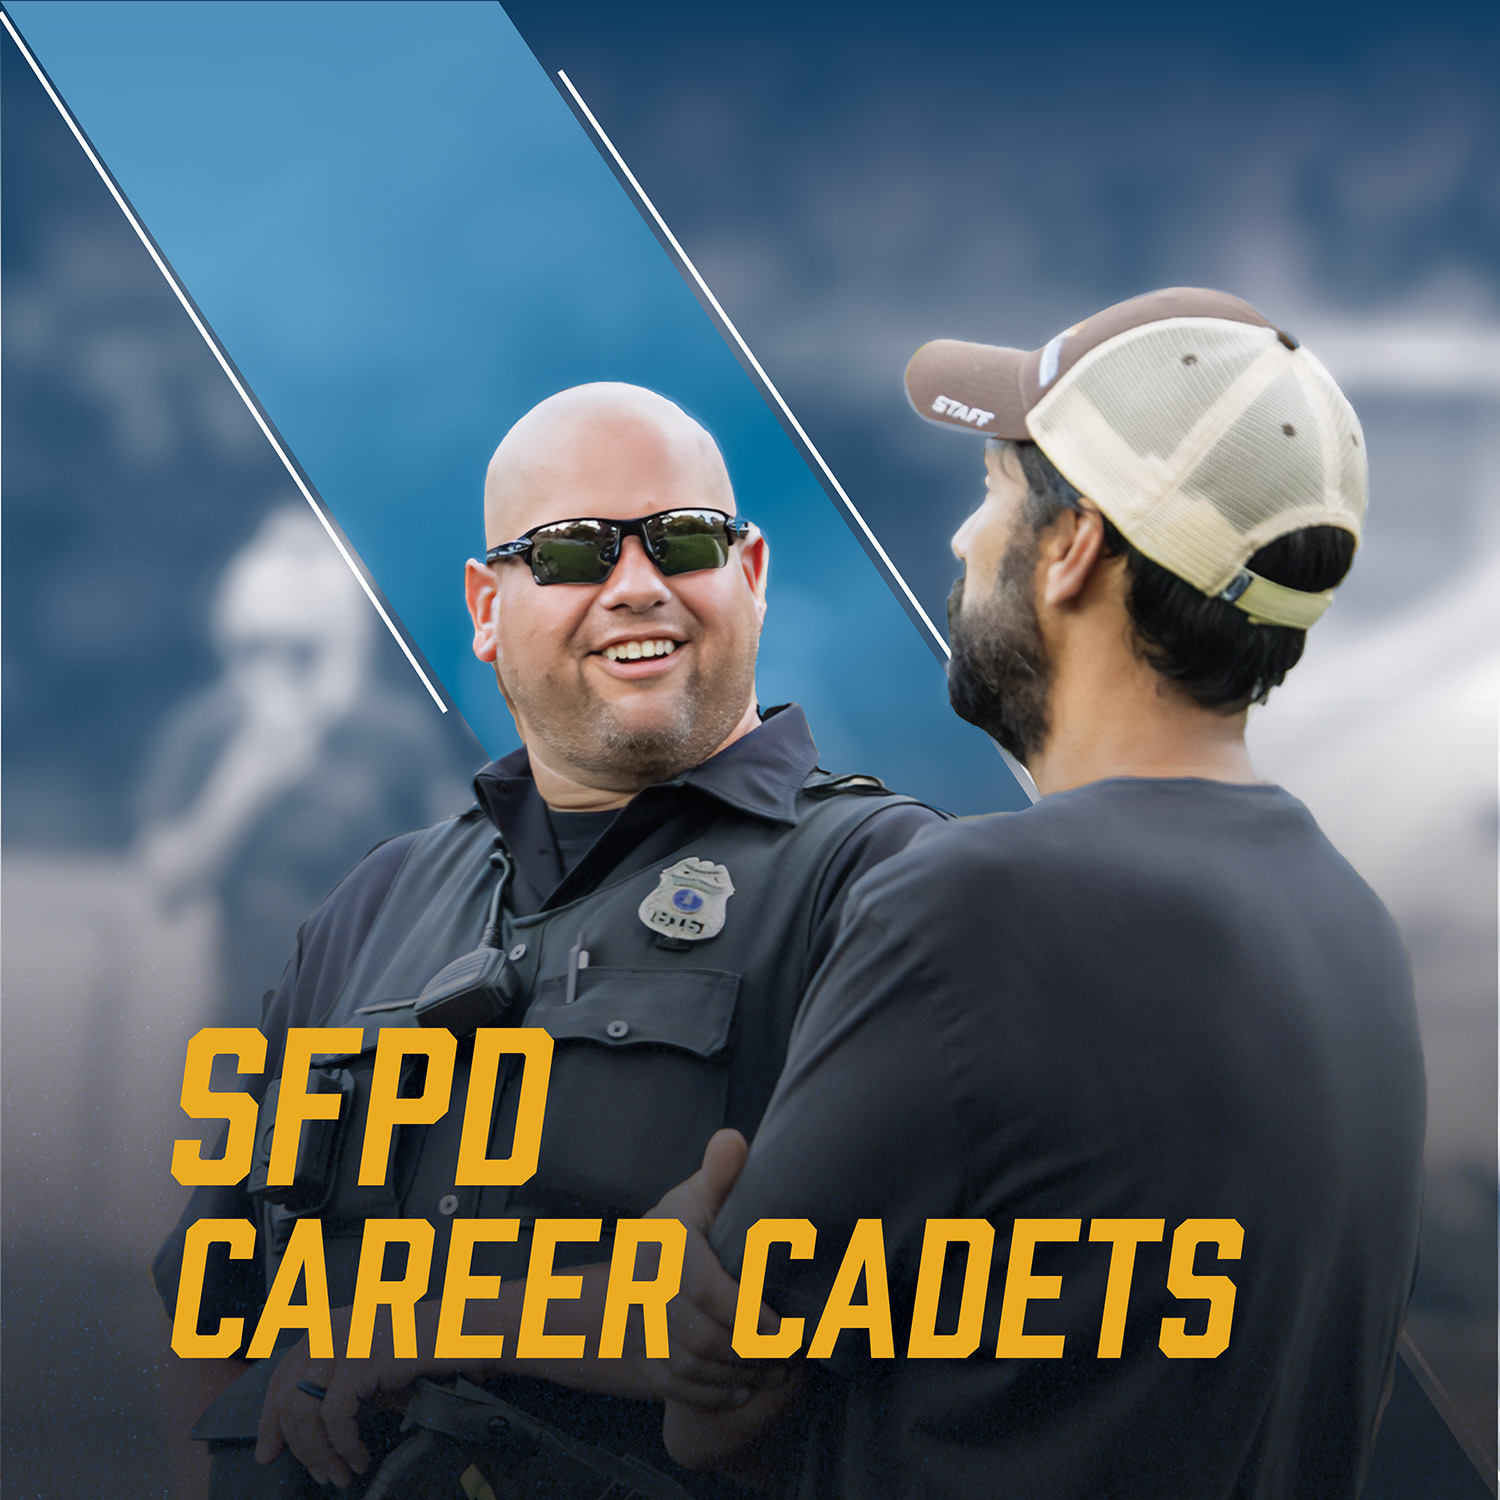 SFPD Career Cadets